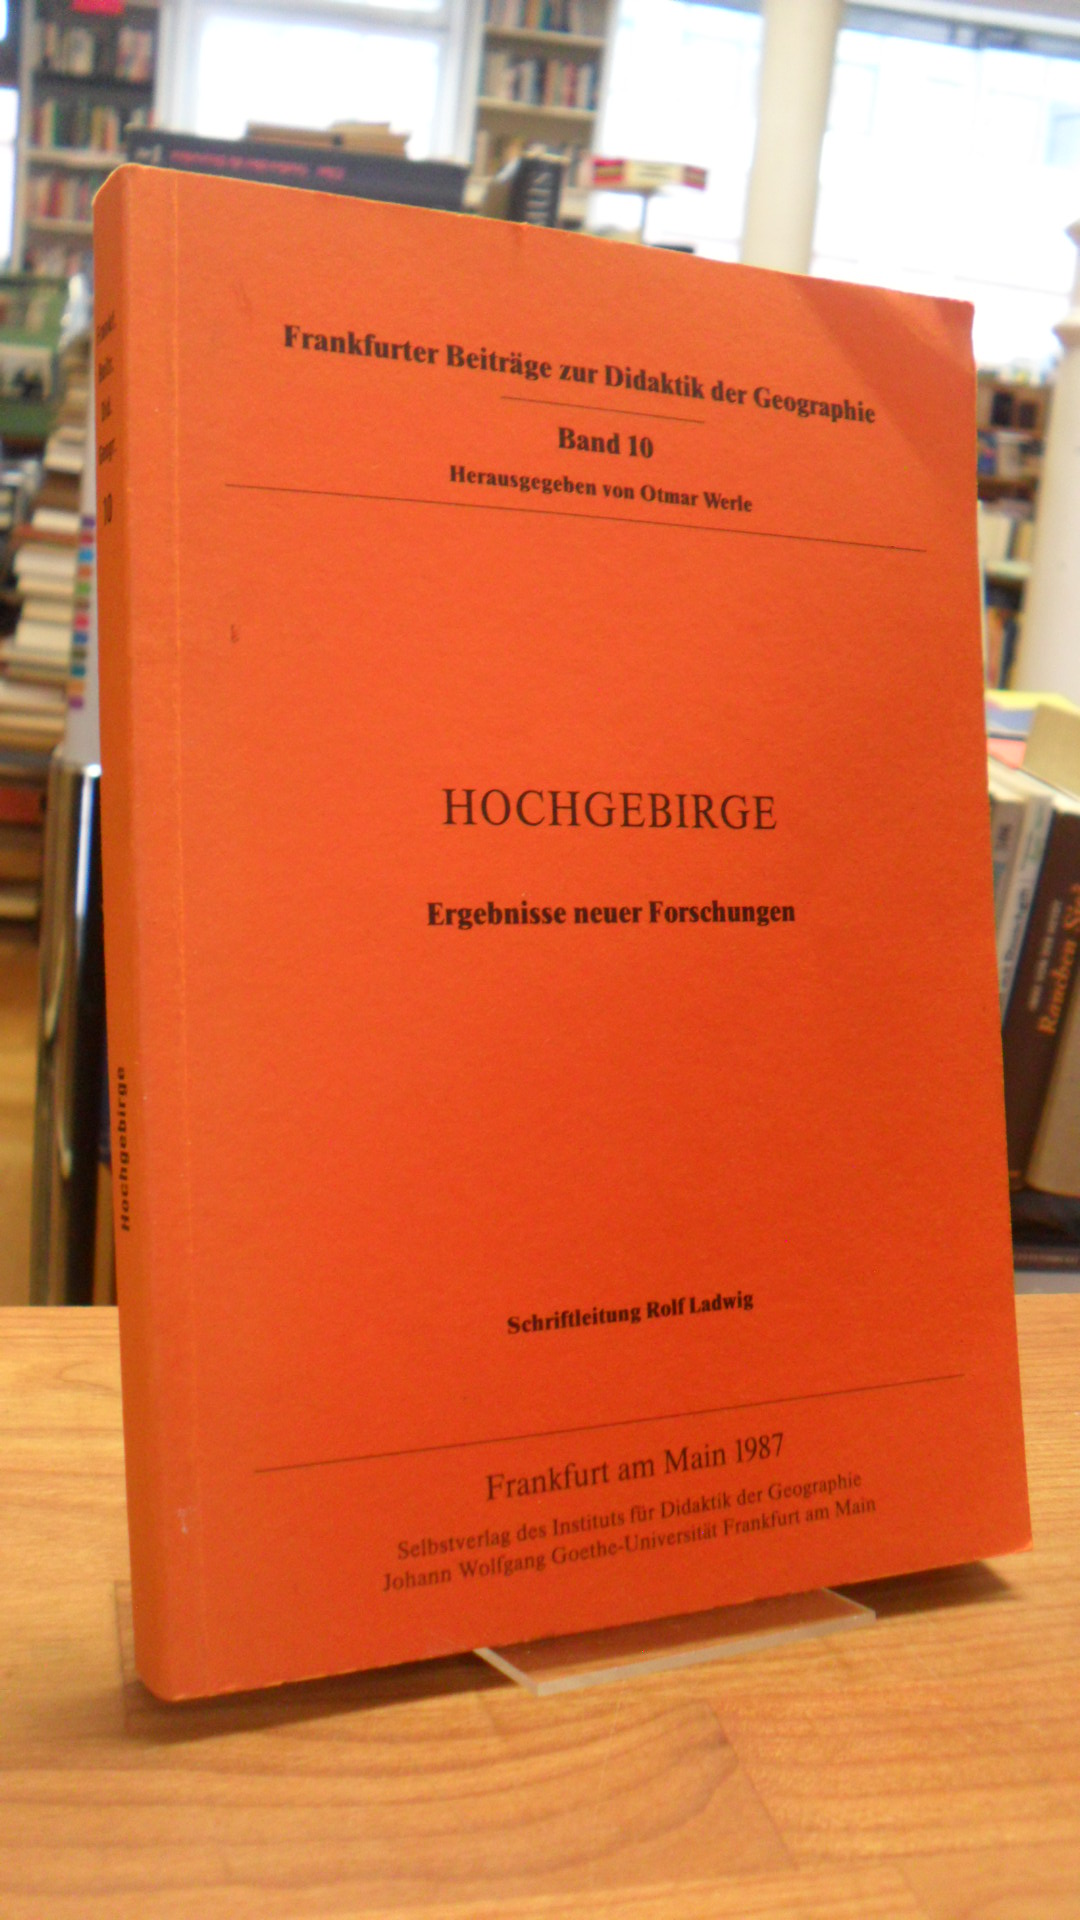 Hochgebirge – Ergebnisse neuer Forschungen,